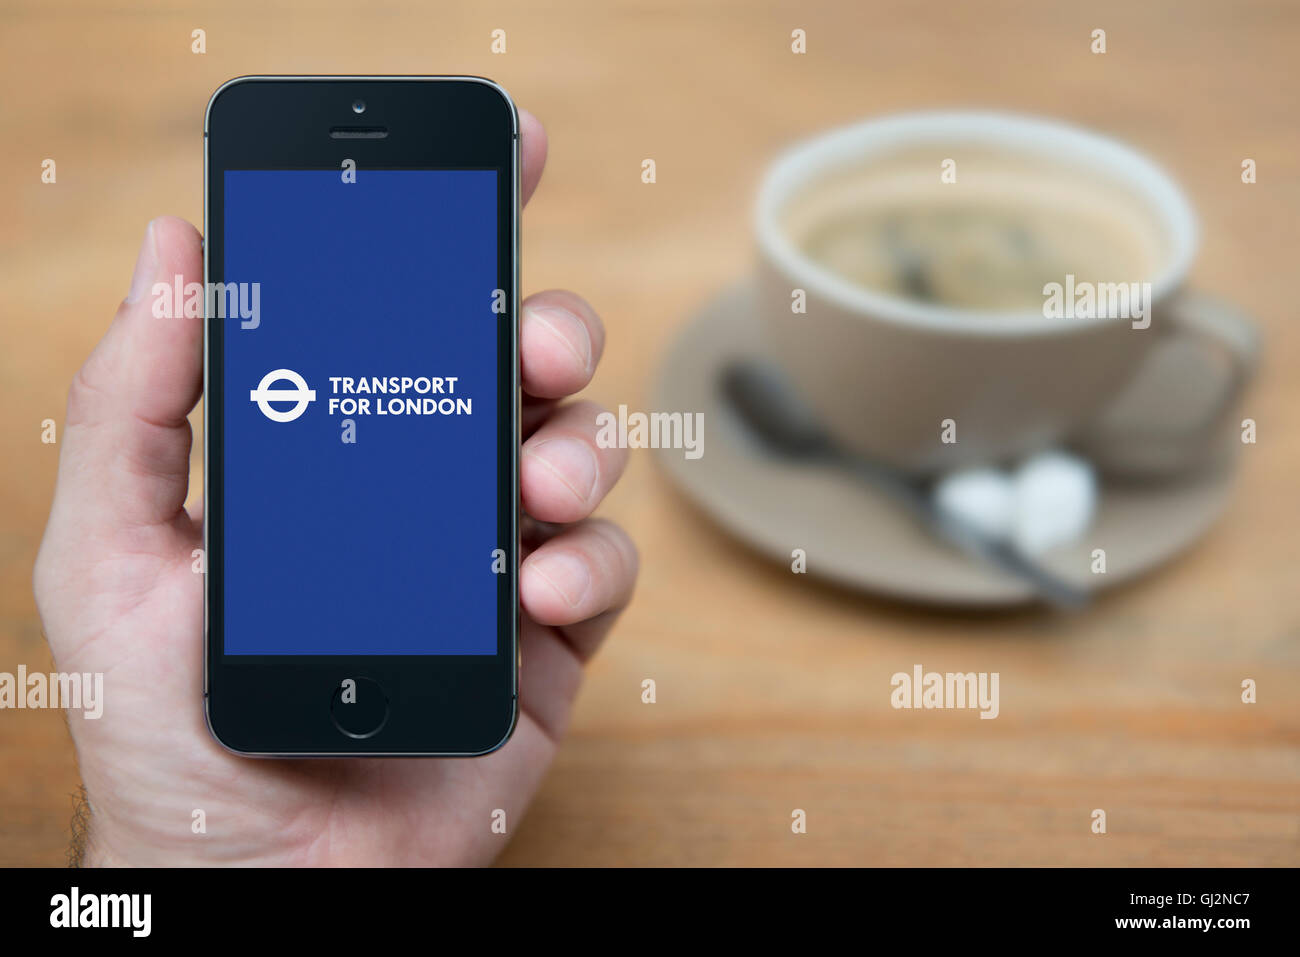 Un hombre mira el iPhone que muestra el logotipo de Transporte de Londres, mientras que se sentó con una taza de café (uso Editorial solamente). Foto de stock